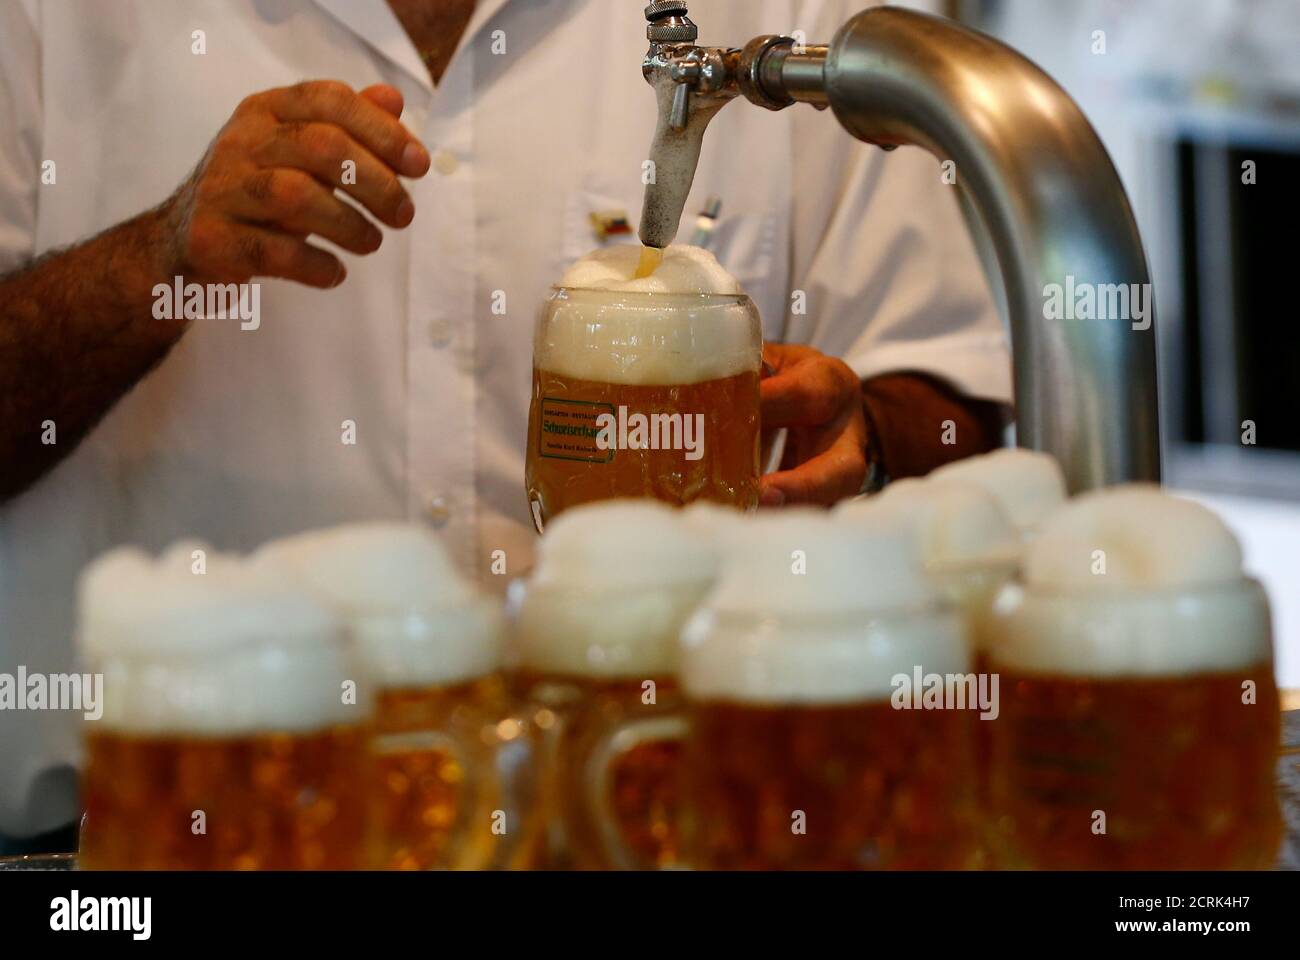 Bier wird im traditionellen Biergarten Schweizerhaus in Wien, Österreich,  gezapft 21. Juni 2017. REUTERS/Leonhard Foeger Stockfotografie - Alamy